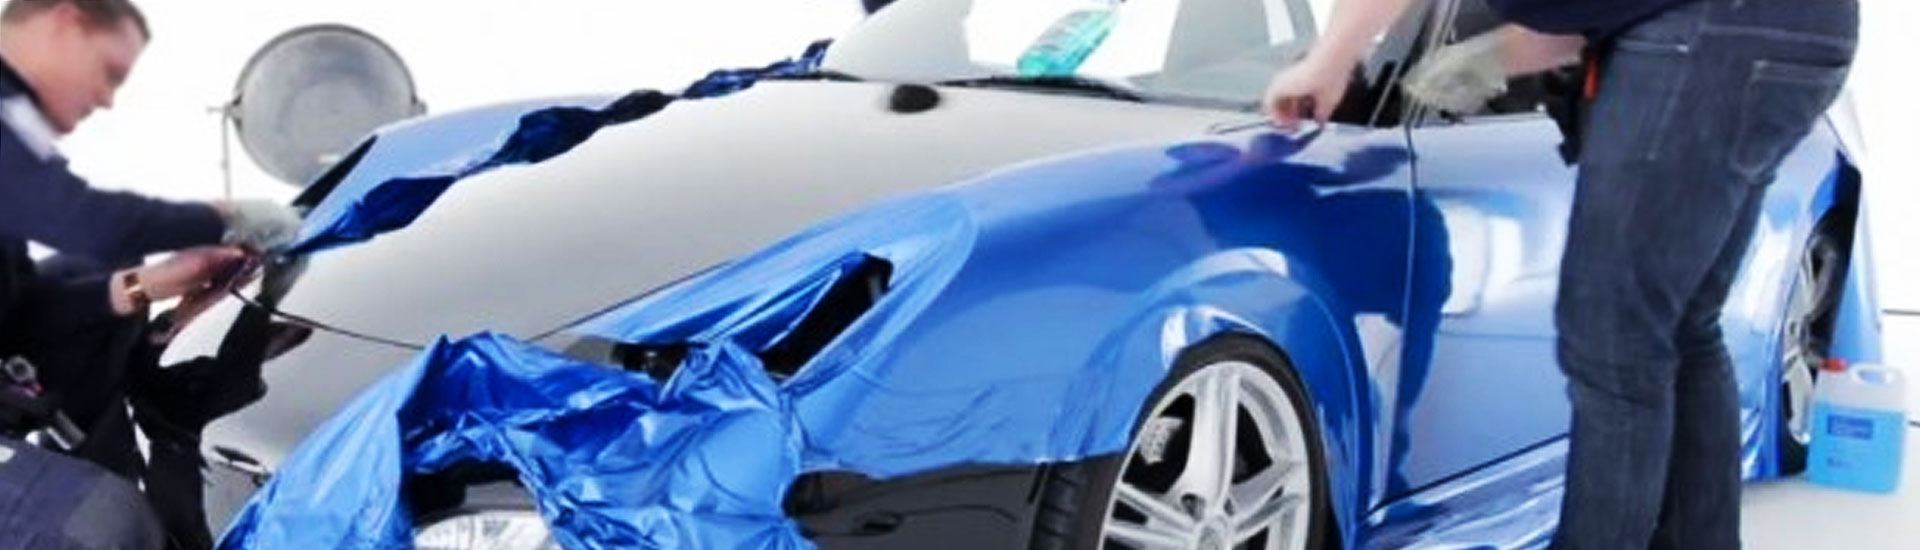 2016 BMW X3 Vehicle Wraps